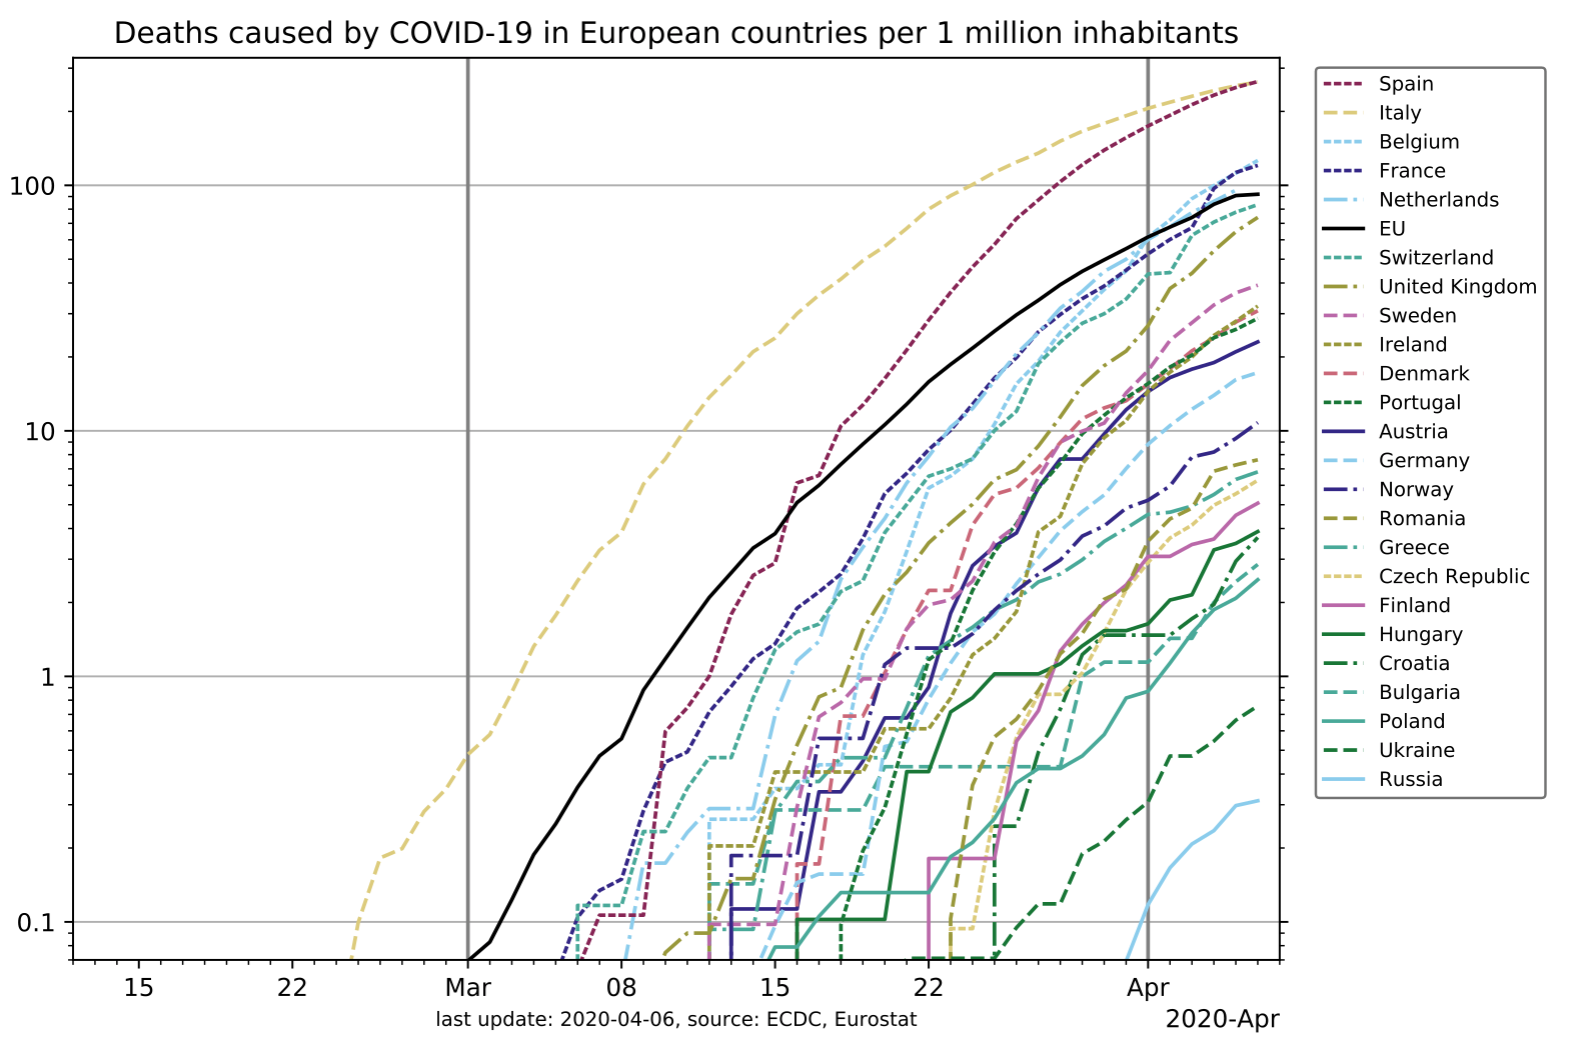 CCP-Virus Death Toll Per Capita for European Nations